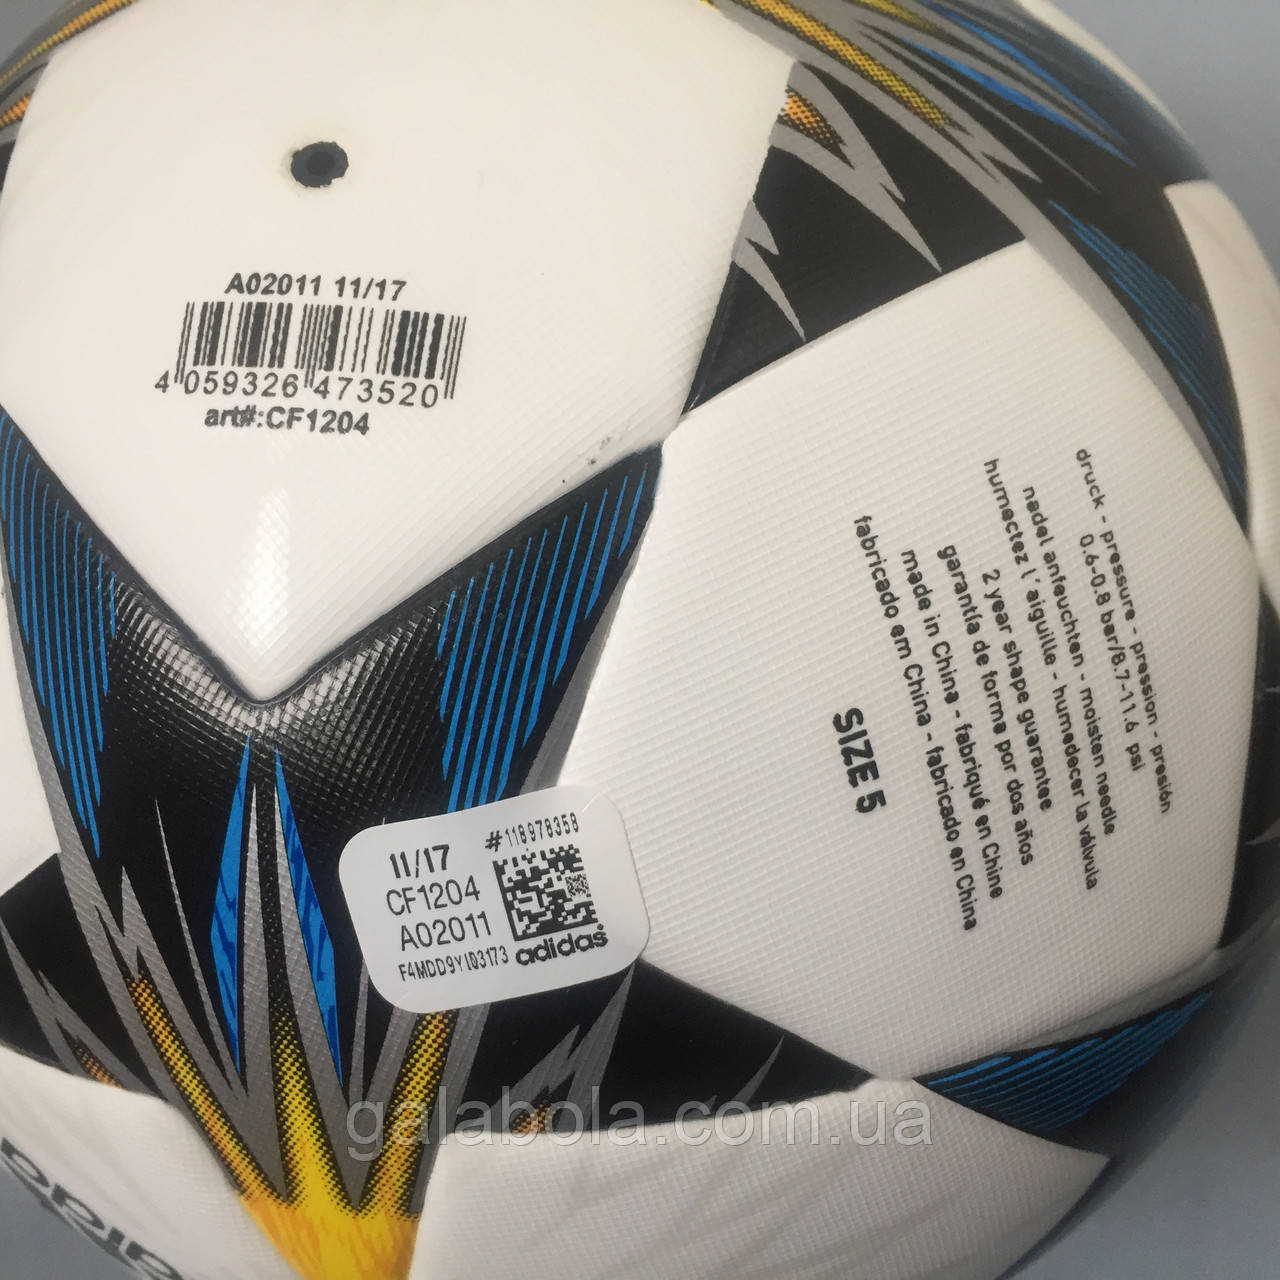 Купить Мяч футбольный FINALE KIEV TOP CF1204 (размер 5), цена 1400 ₴ — Prom.ua (ID#810617022)